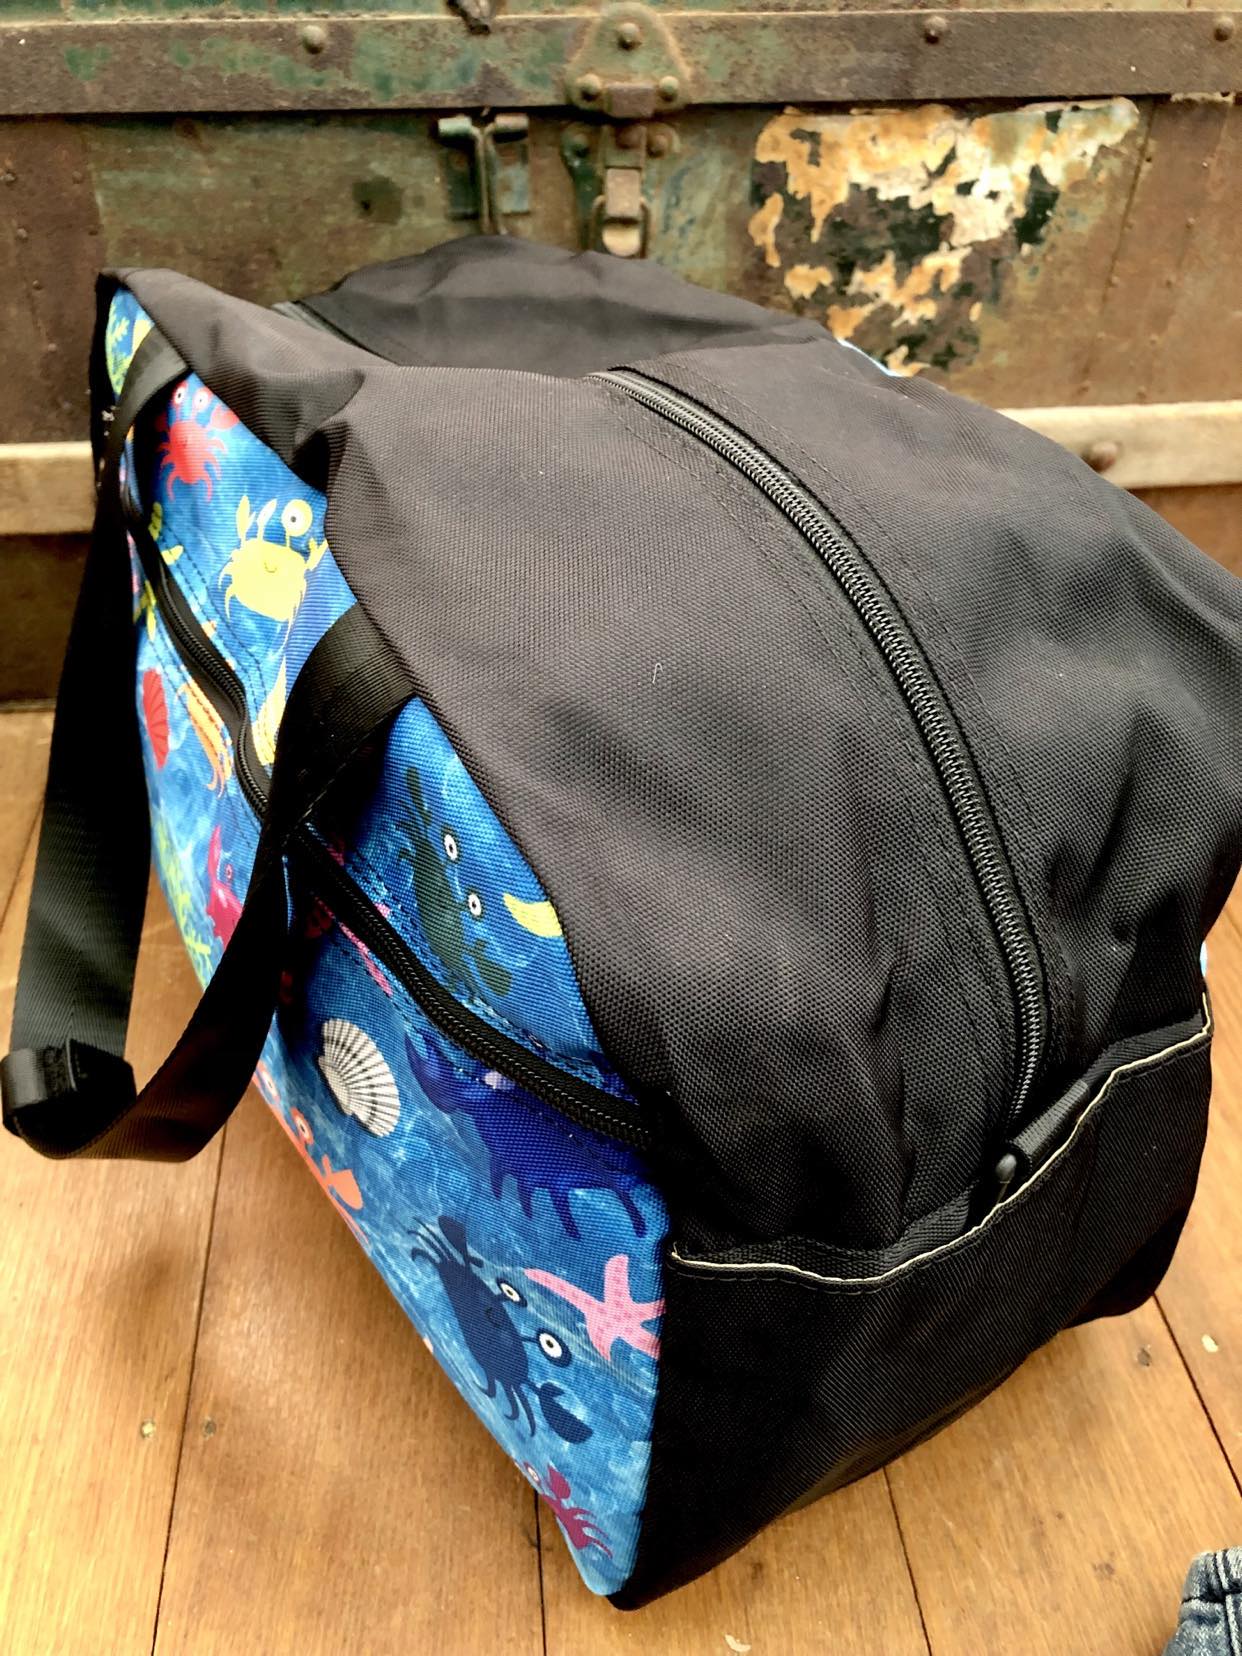 Cute Crab - Travel Bag